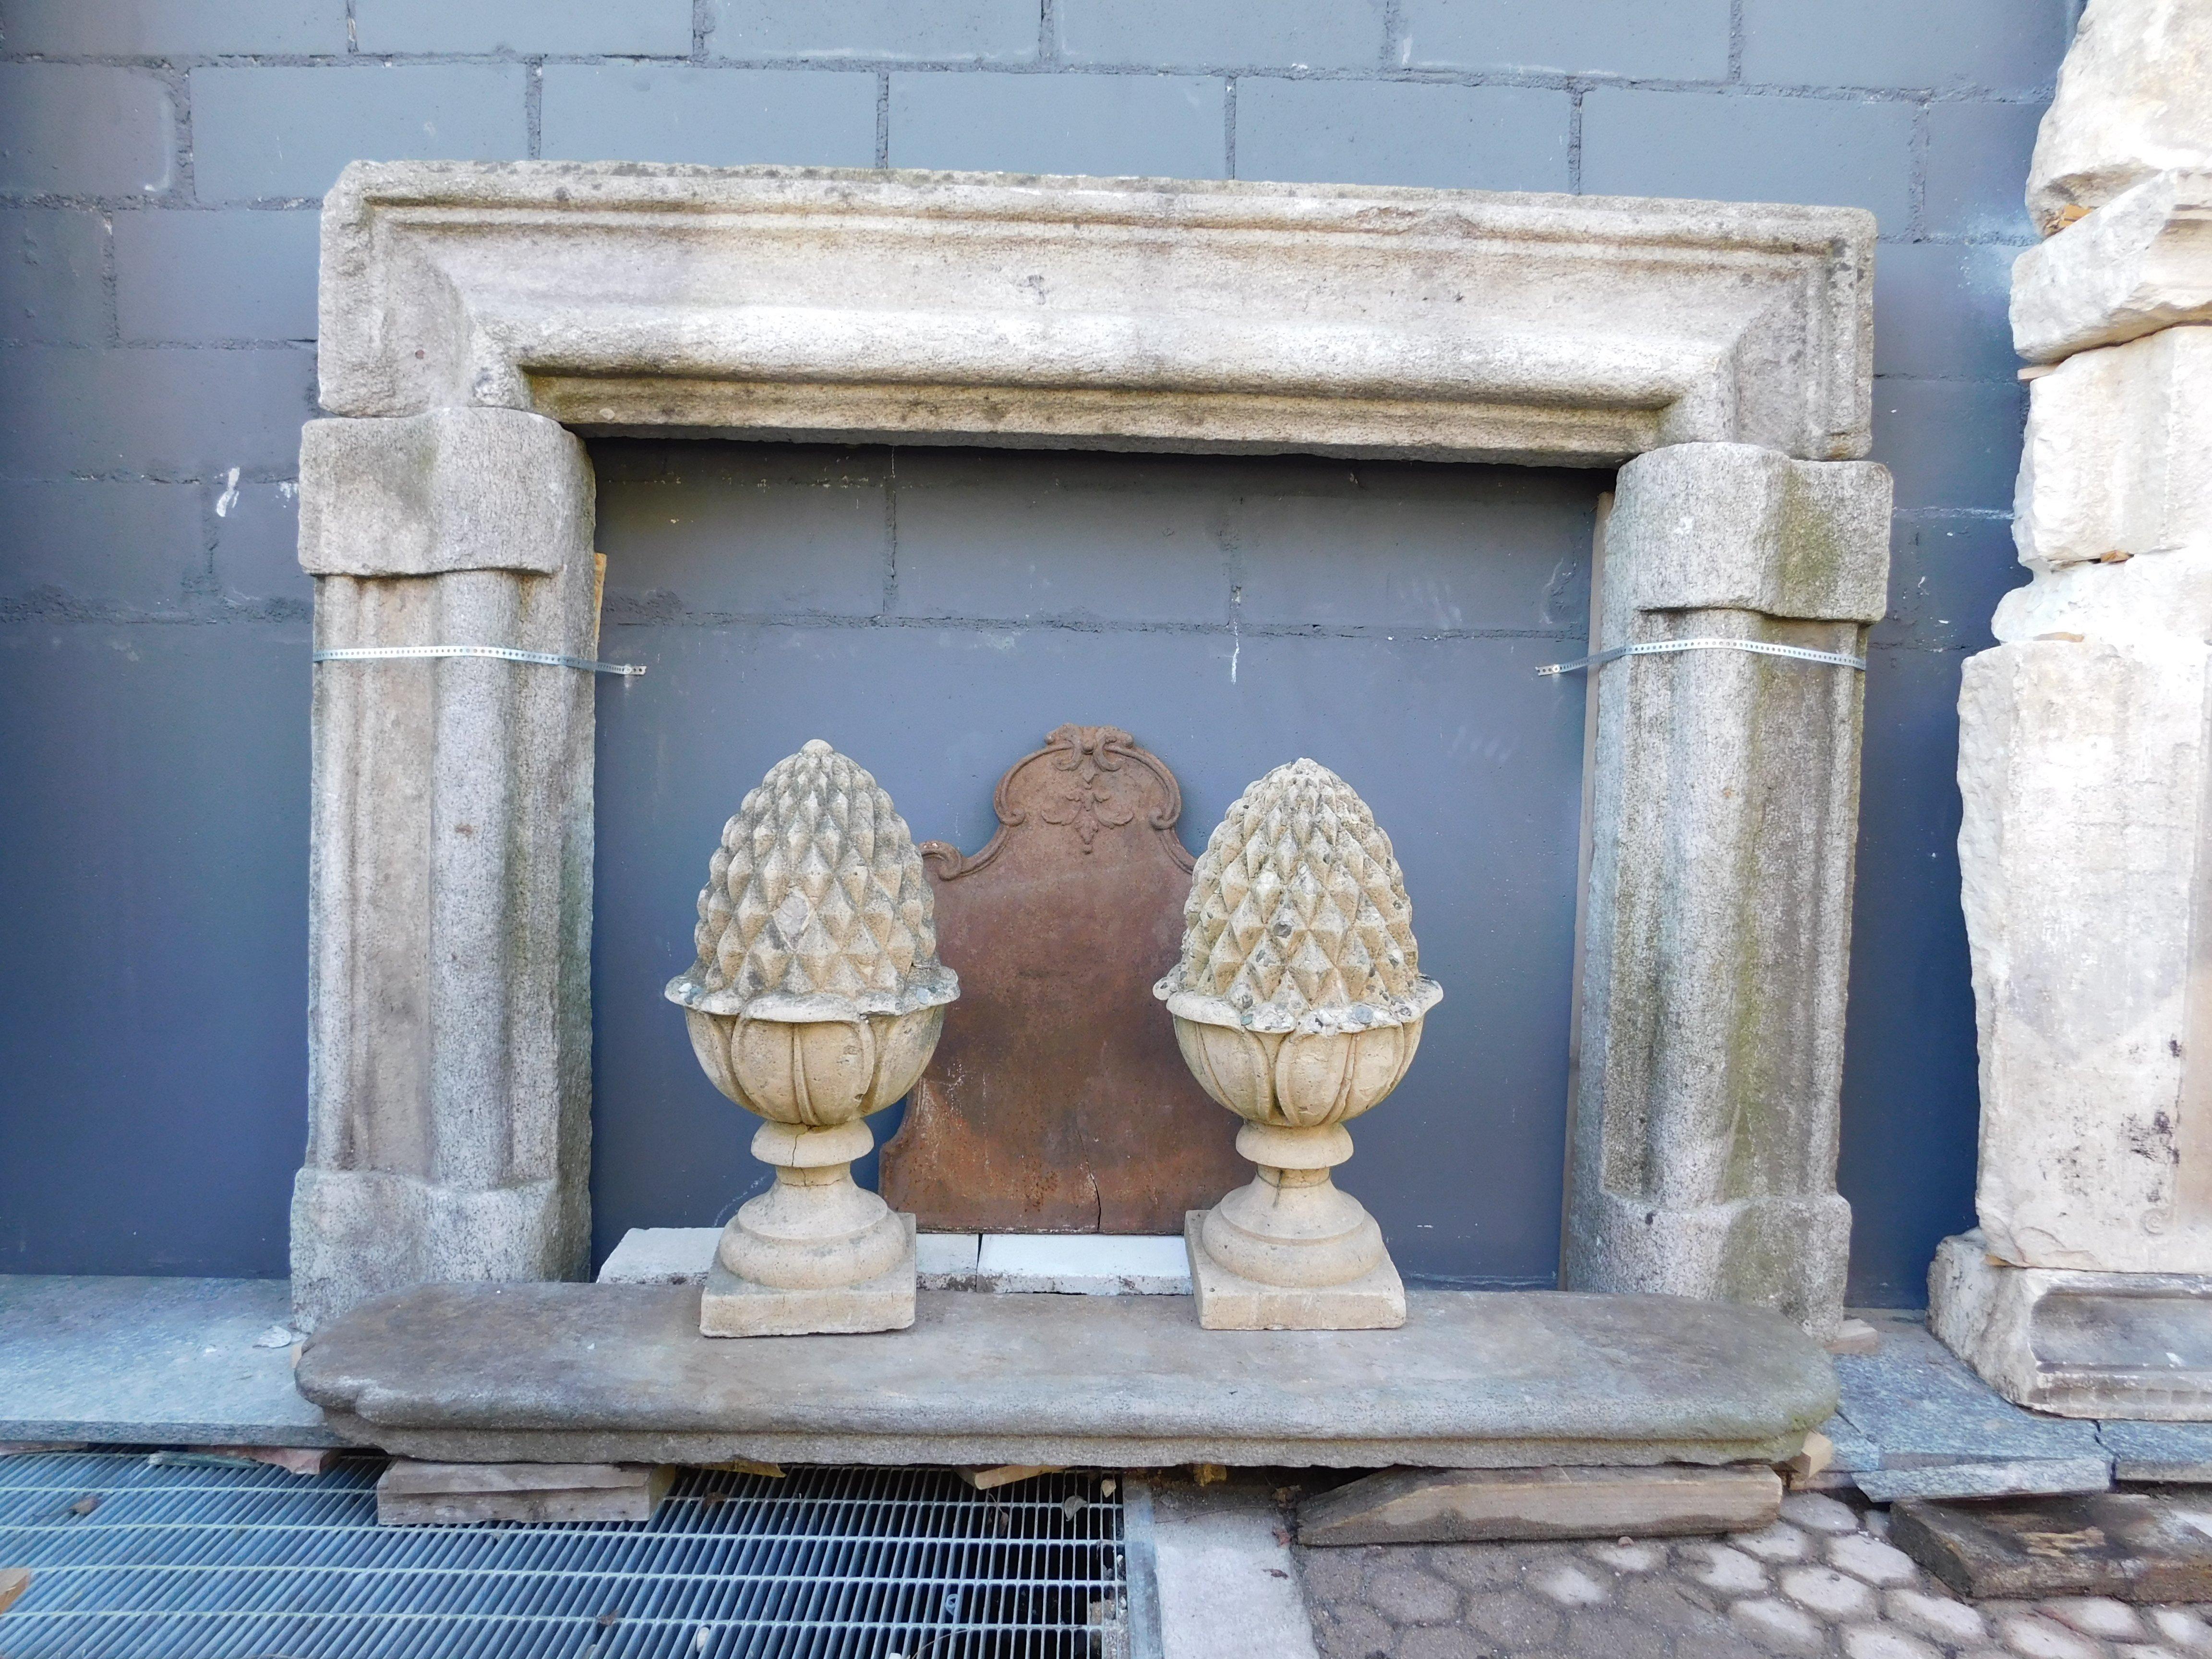 Manteau de cheminée antique, taillé à la main dans la pierre grise, avec la forme typique des cheminées roses de Salvator, reprenant le cadre du célèbre peintre, cheminée originale des années 1600, construite pour un important bâtiment en Italie